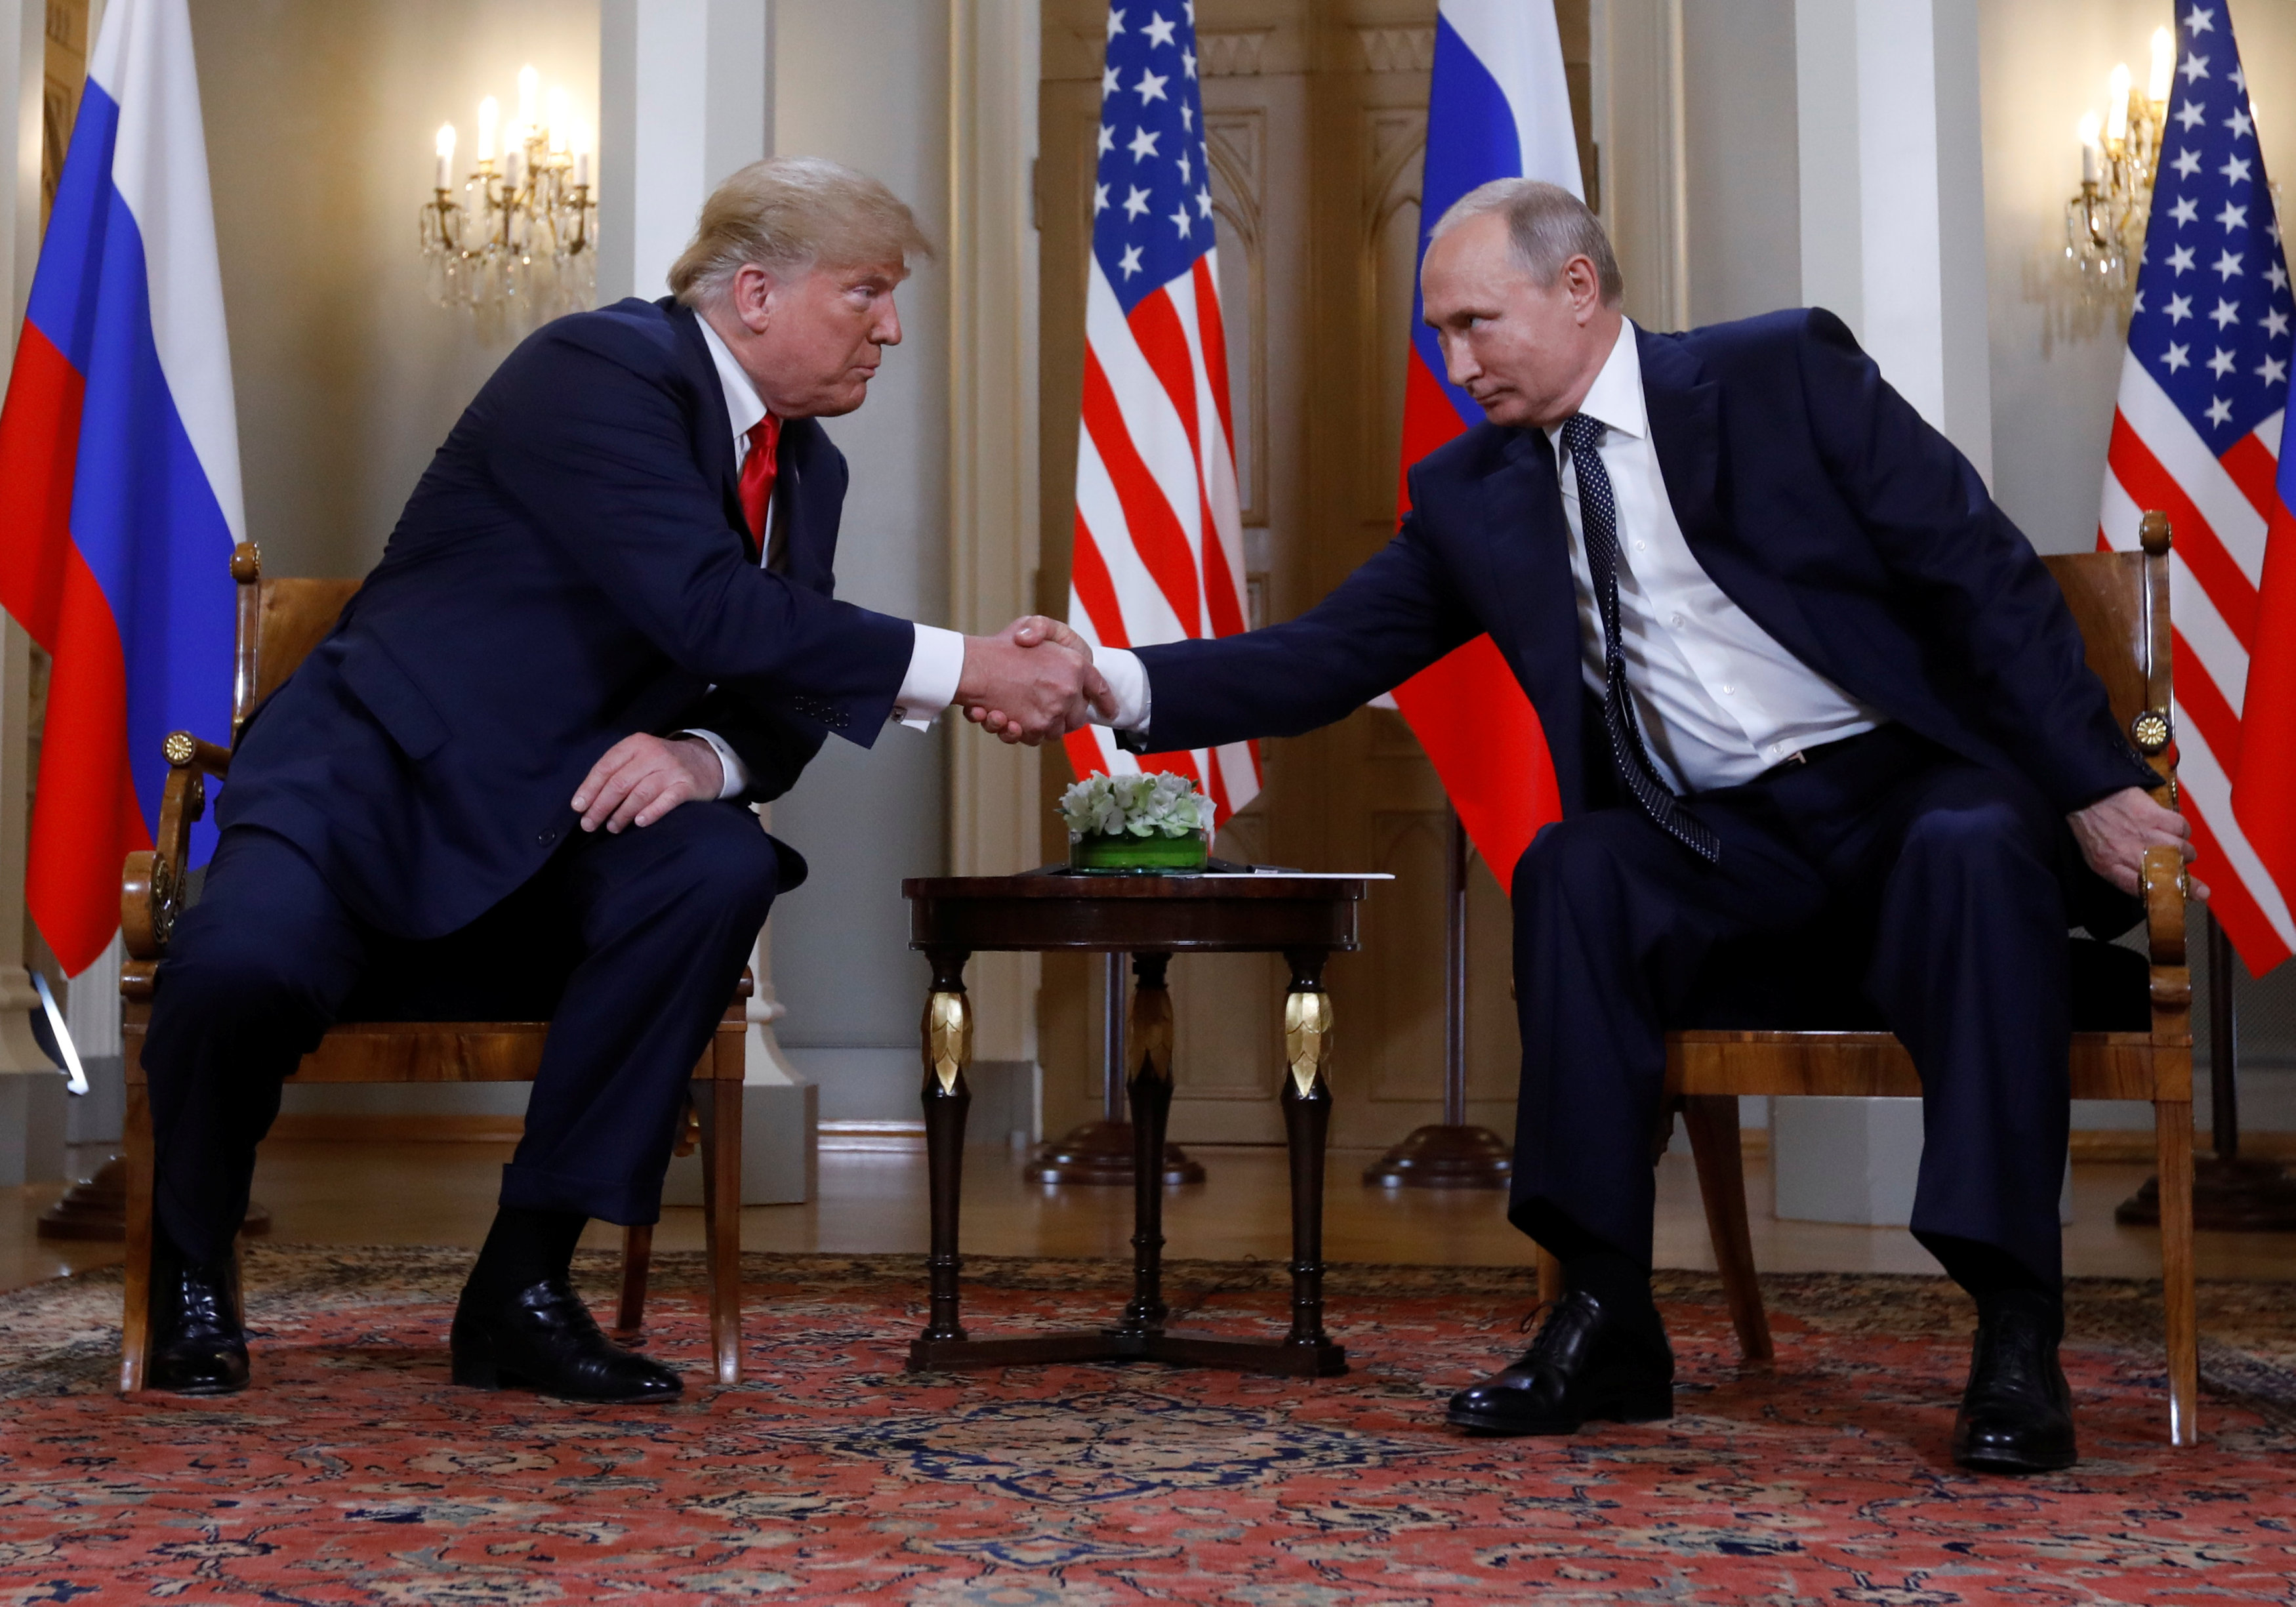 2018年7月16日A俄羅斯總統普京與美國總統特朗普舉行歷史性峰會]來源G路透社^